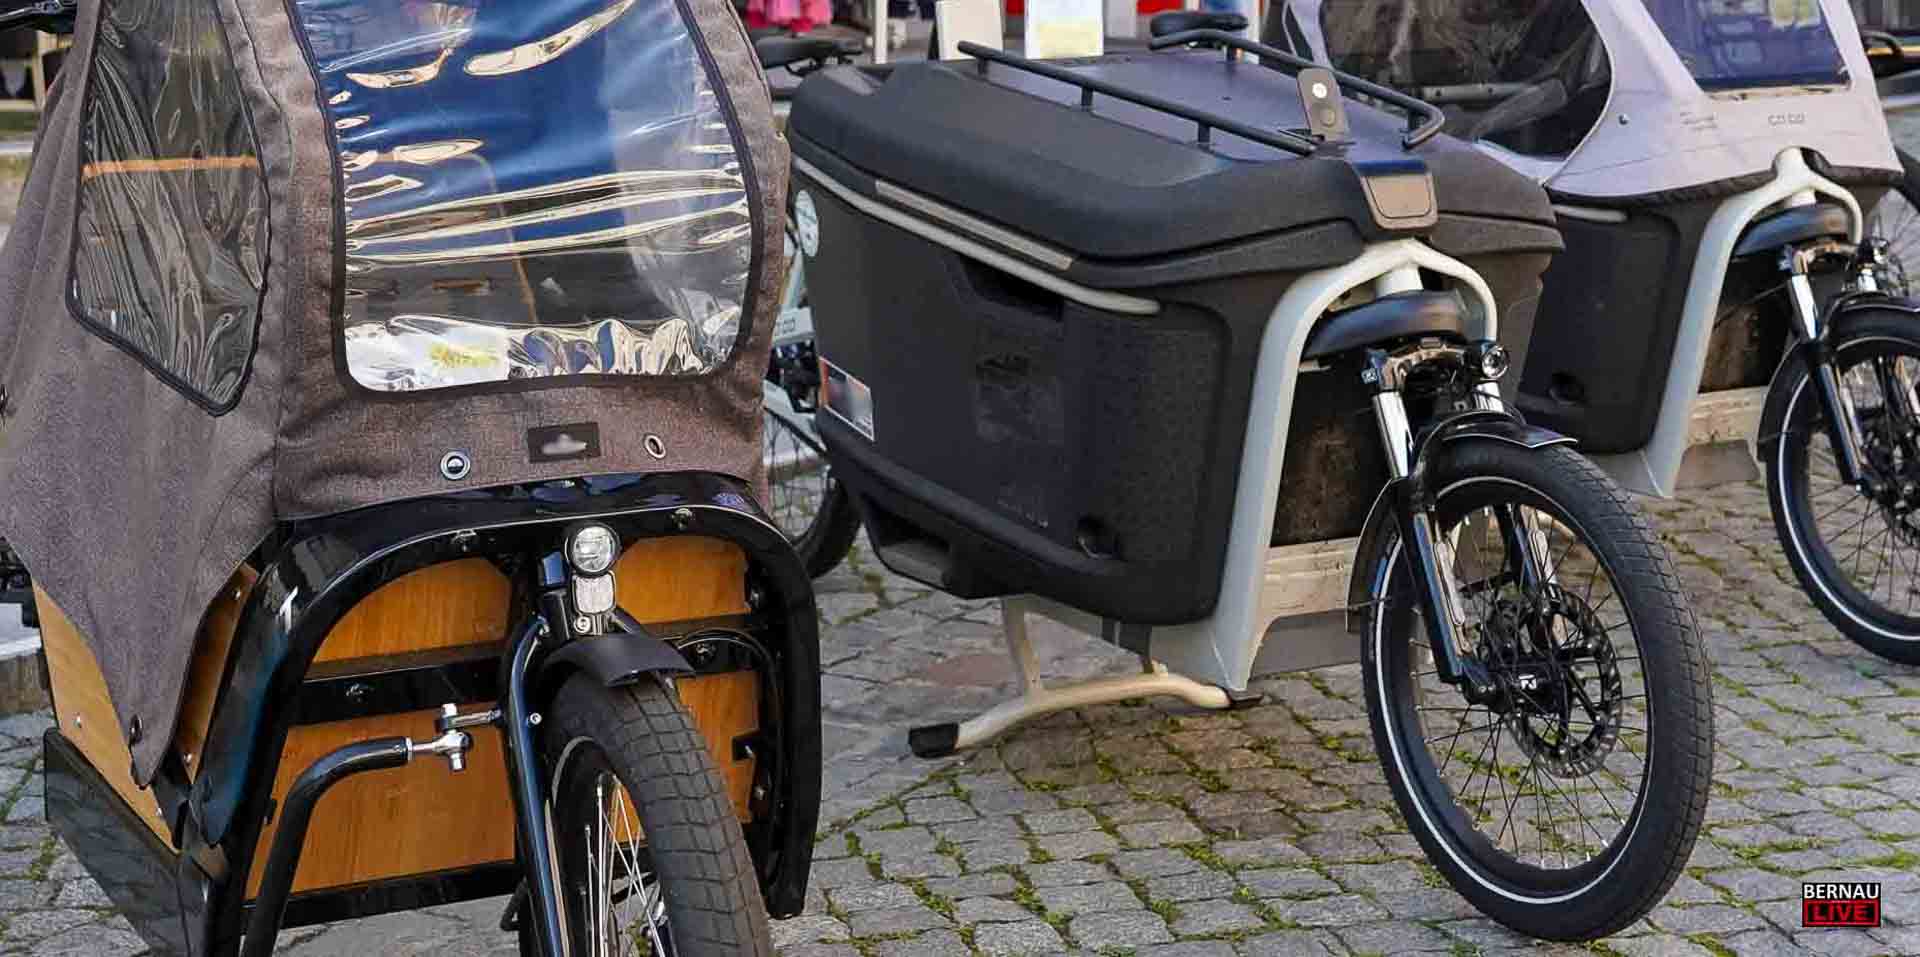 Lastenfahrräder erweisen sich im Barnim nur als "Nischenlösung"